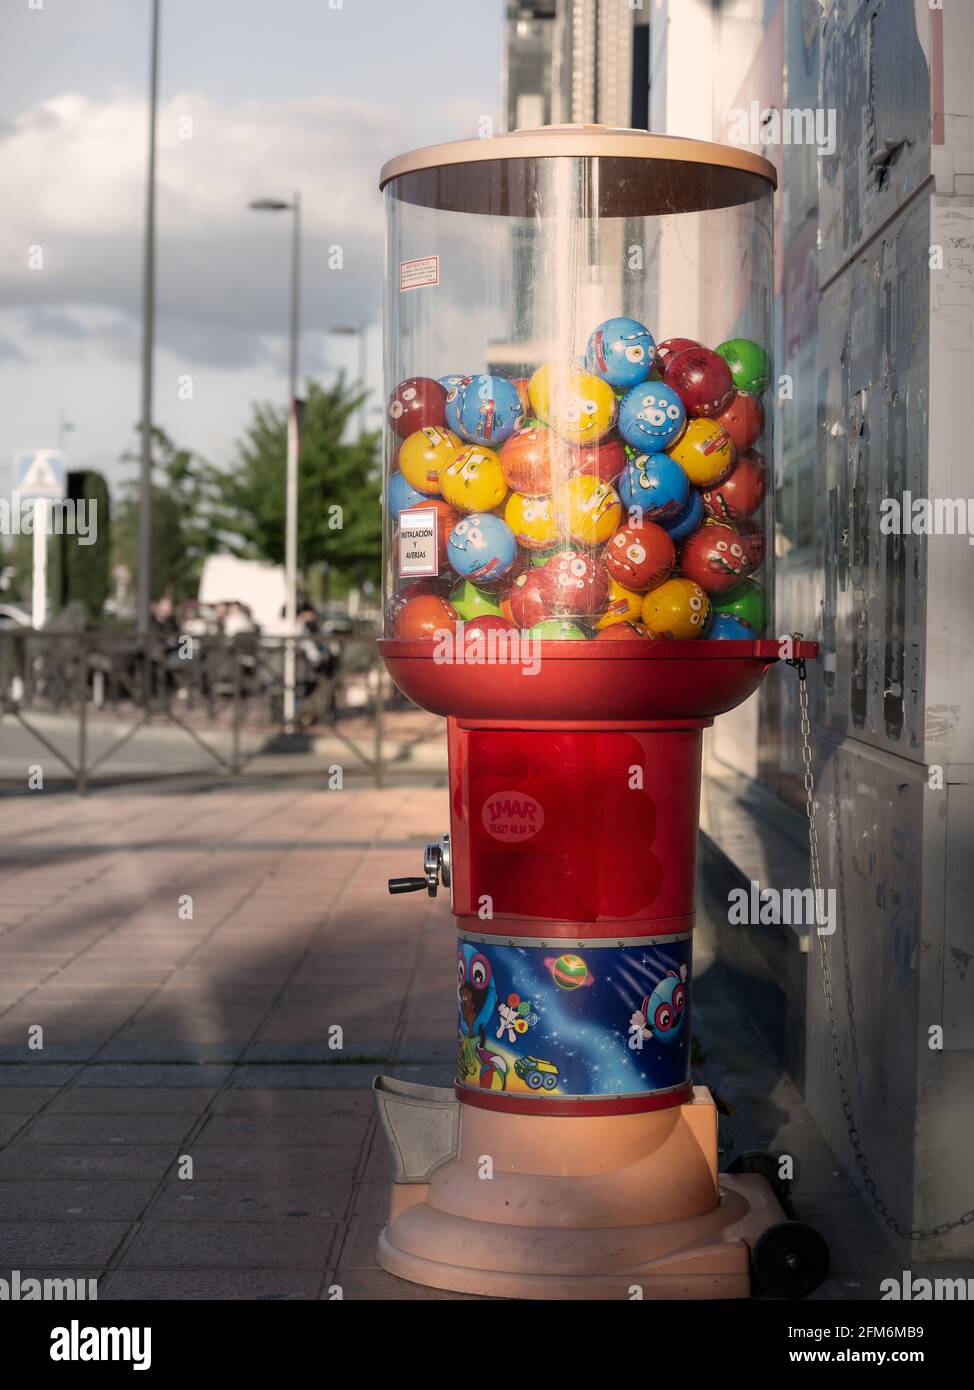 distributore di giocattoli a capsula in una strada cittadina Foto Stock